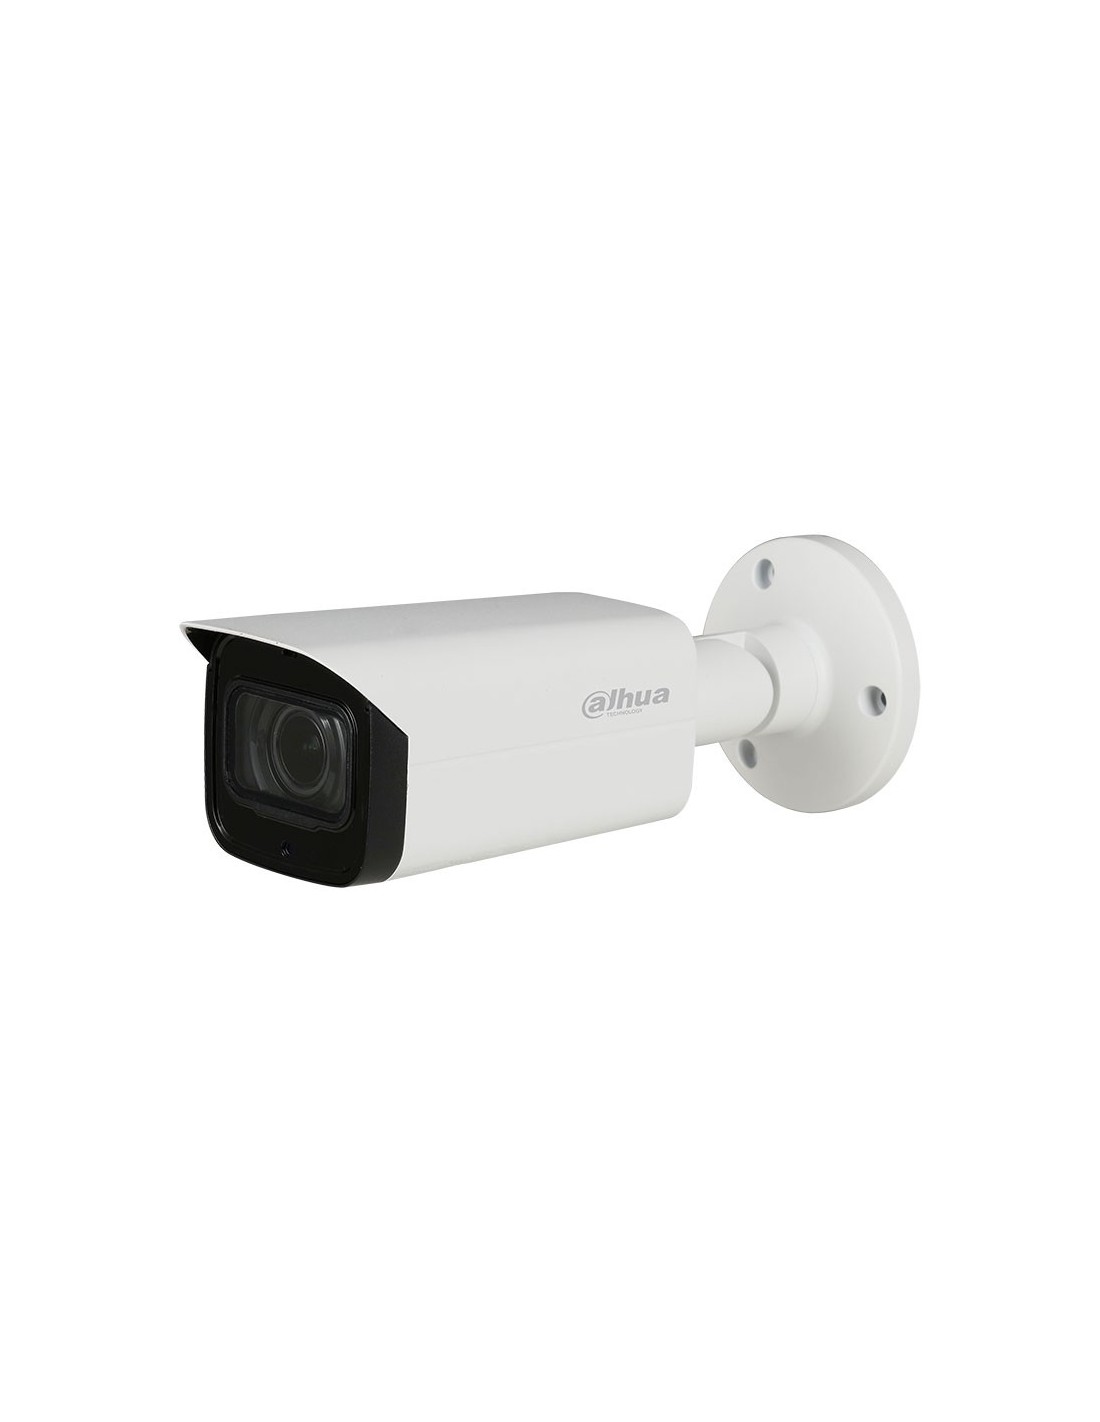 Camara de Seguridad Para Casas Vision Nocturna 1080p Camara Vigilancia  Exterior